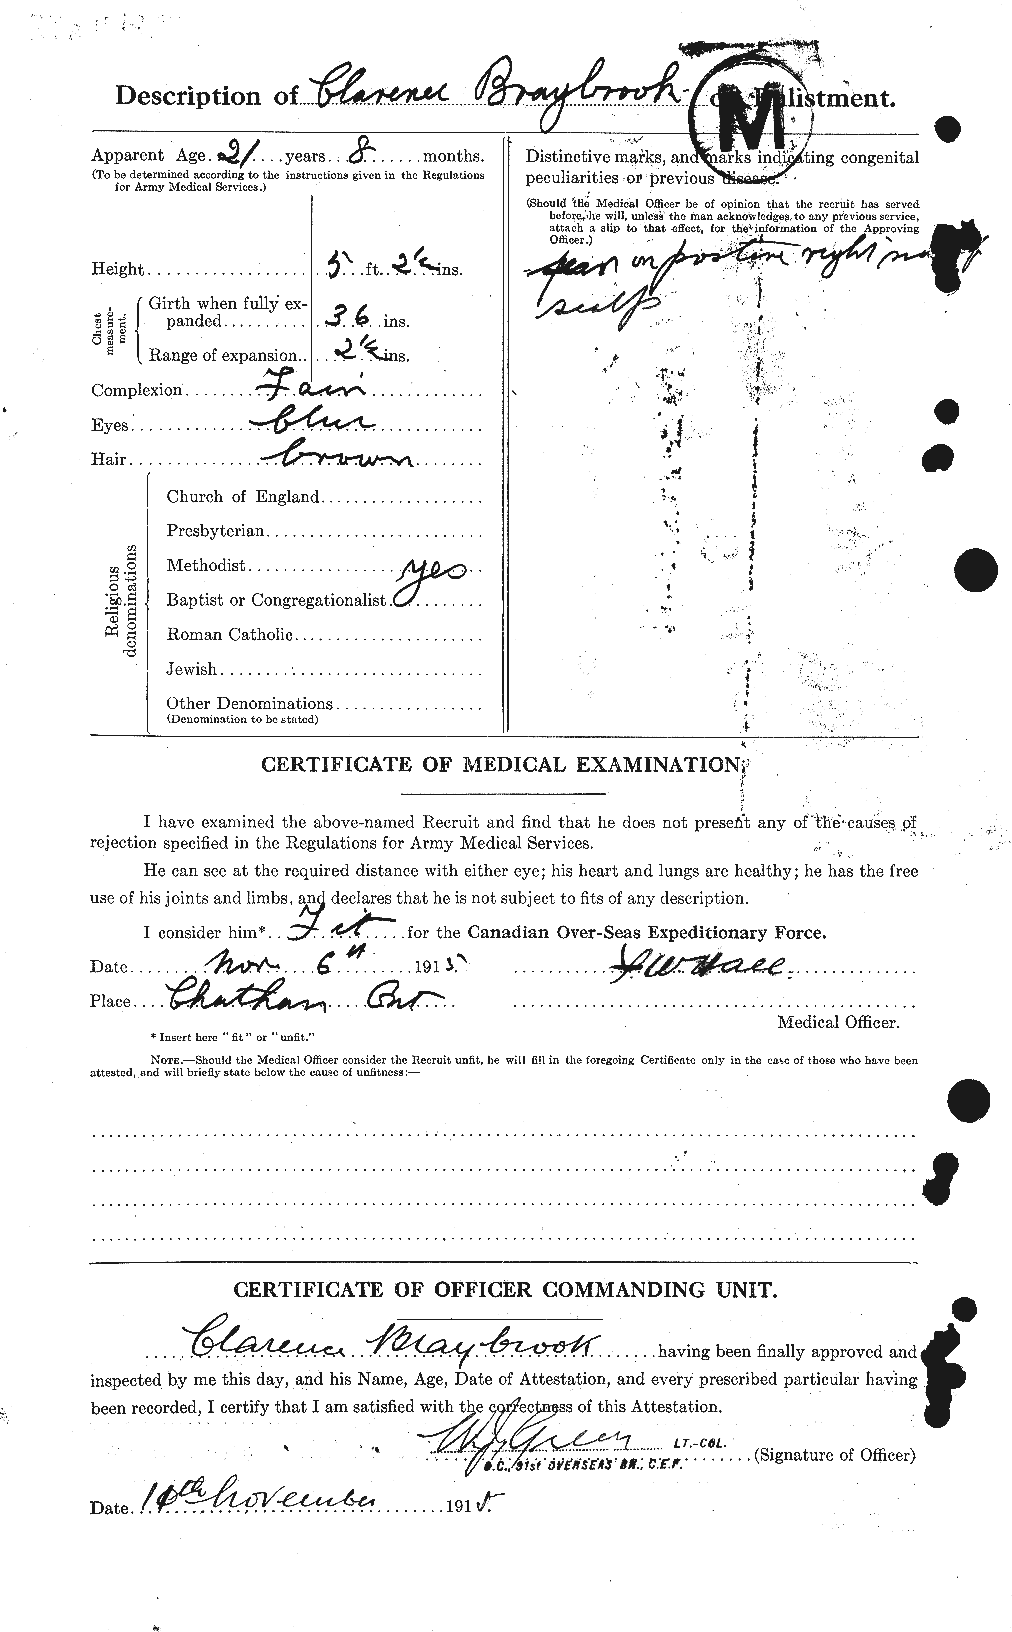 Dossiers du Personnel de la Première Guerre mondiale - CEC 262354b